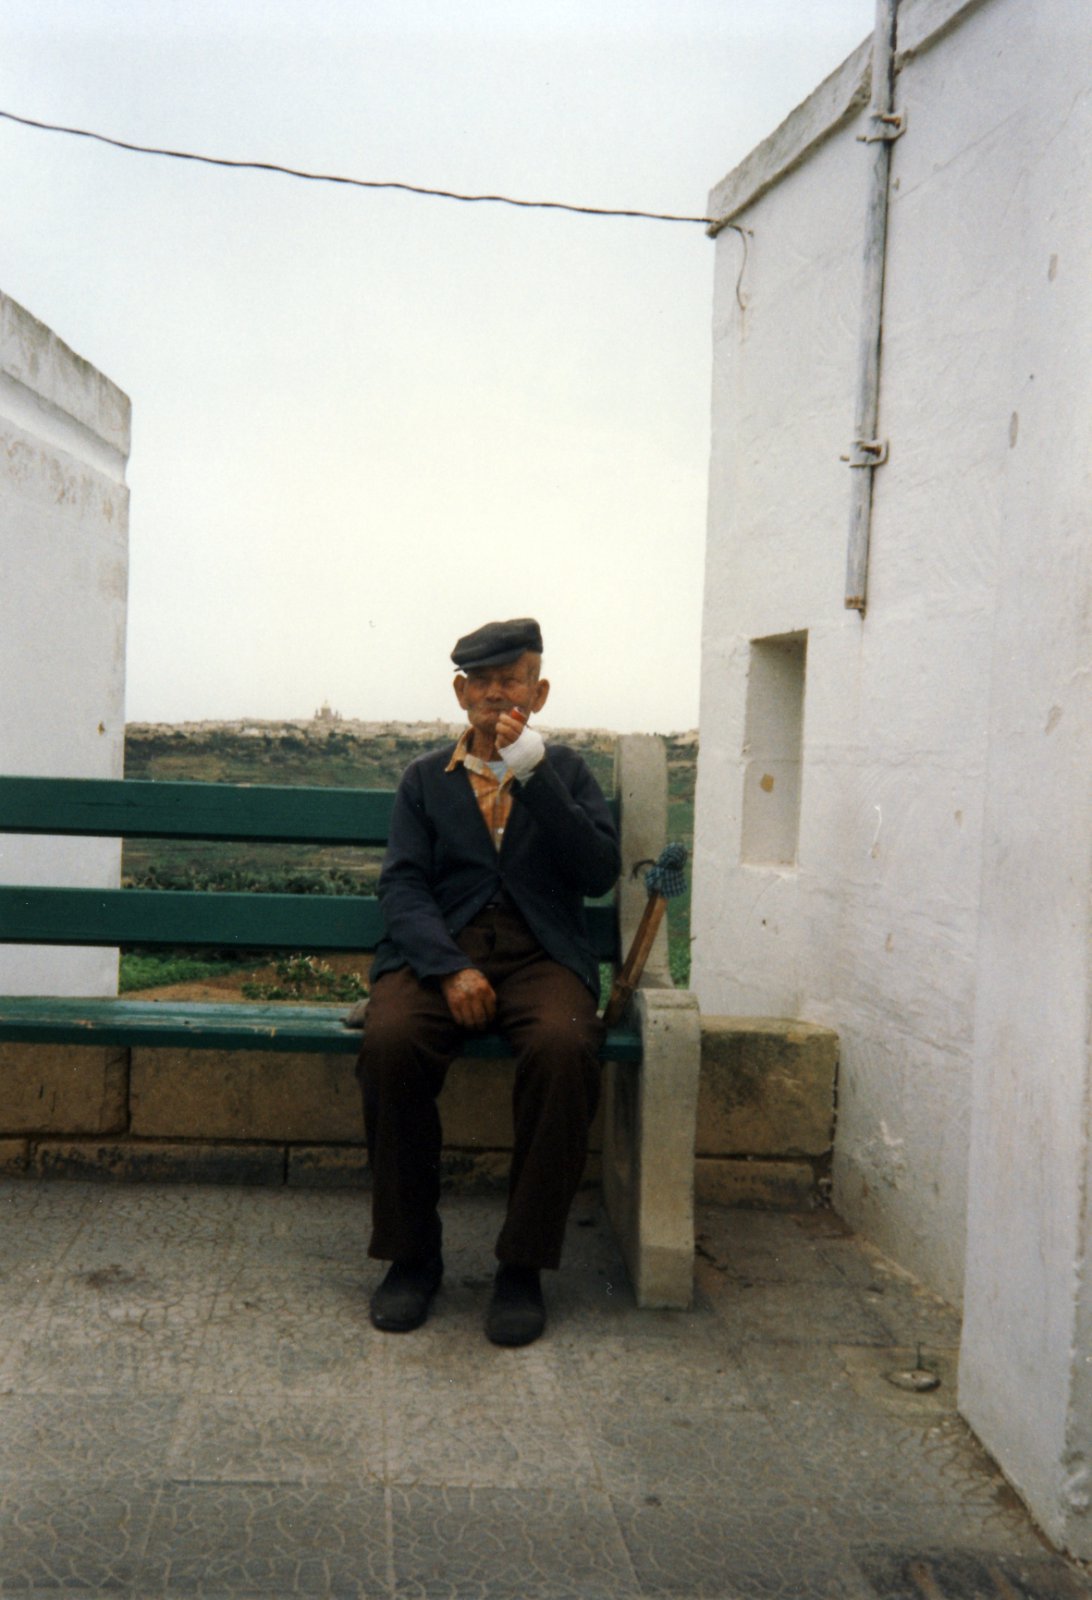 Malta, 1993